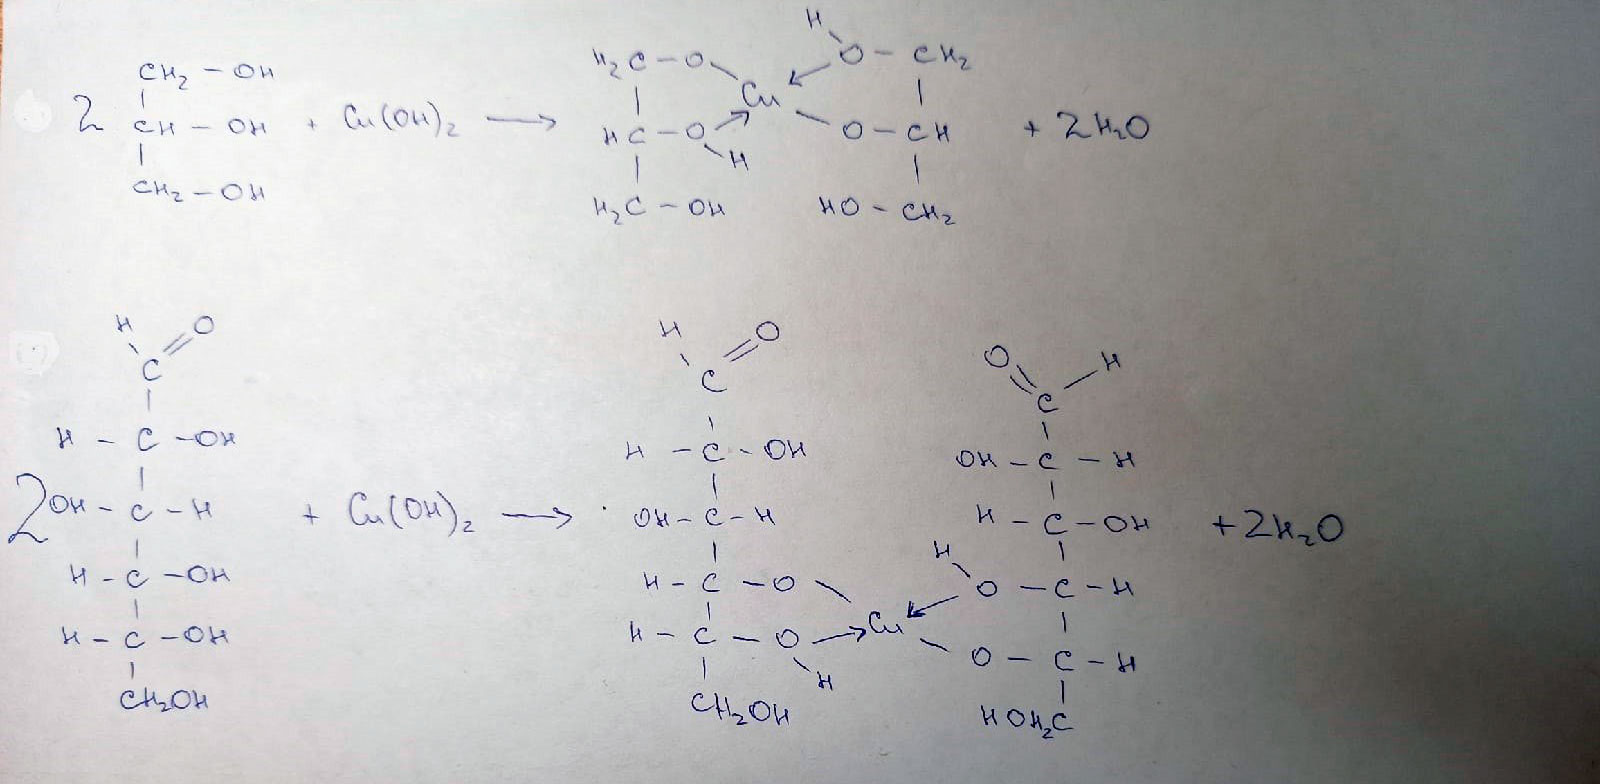 Реакция со свежеосажденным гидроксидом меди. Глицерин и оксид меди. Формальдегид и гидроксид меди 2. Глицерин и гидроксид меди 2. Глицерин и оксид меди 2.